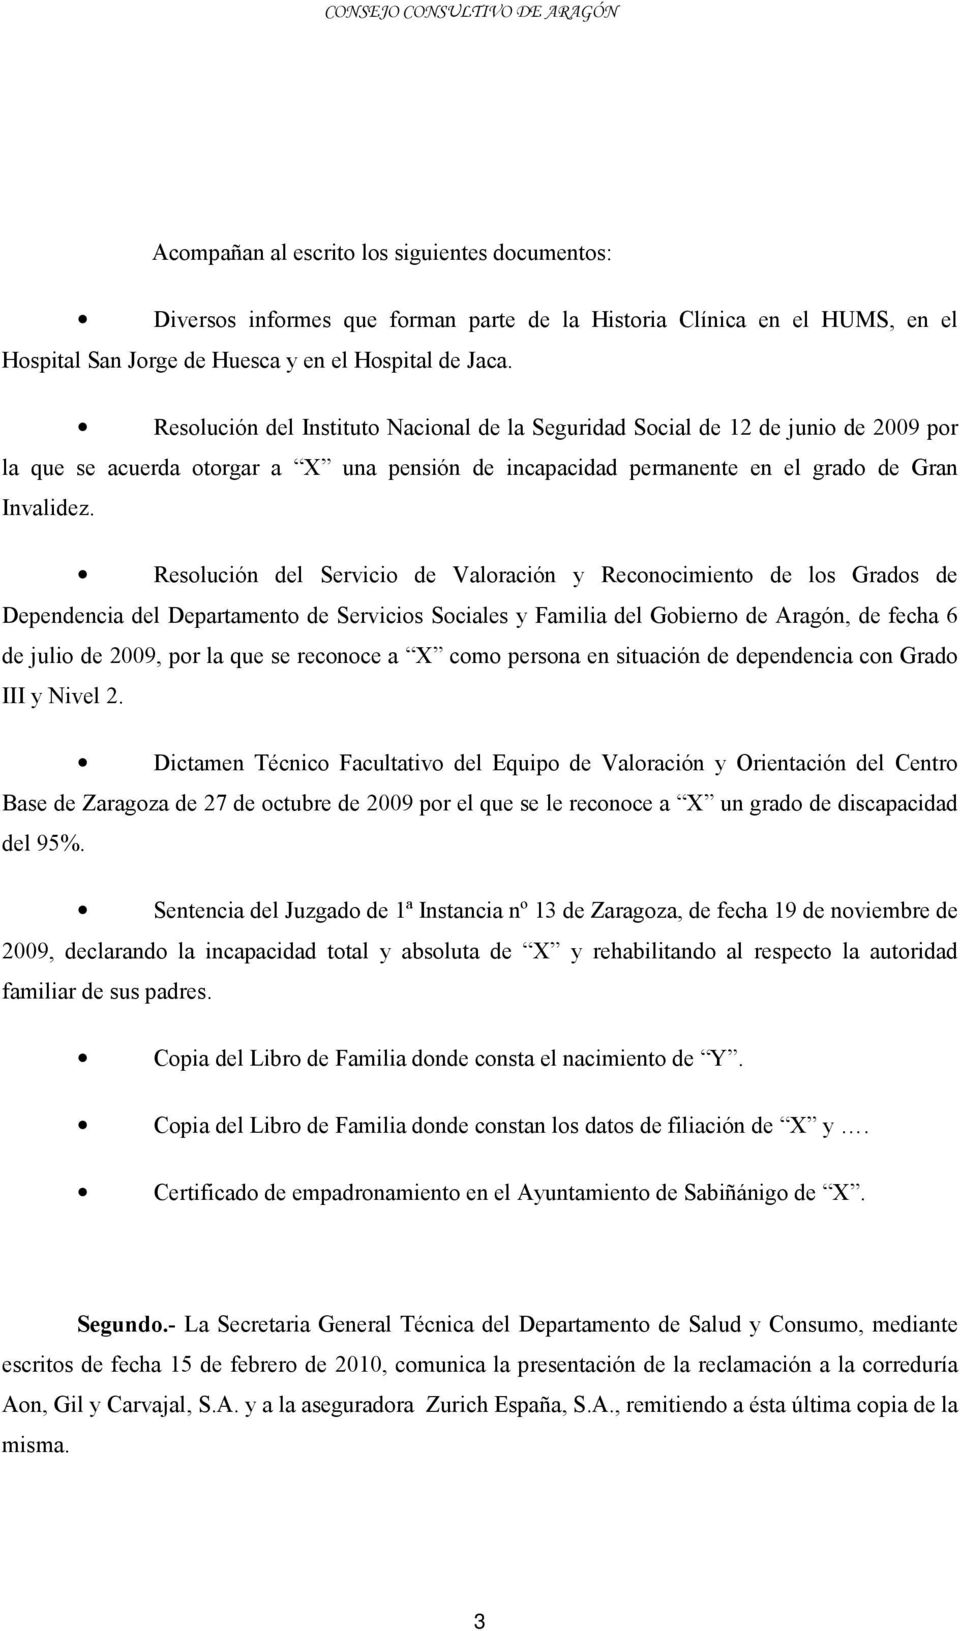 Resolución del Servicio de Valoración y Reconocimiento de los Grados de Dependencia del Departamento de Servicios Sociales y Familia del Gobierno de Aragón, de fecha 6 de julio de 2009, por la que se